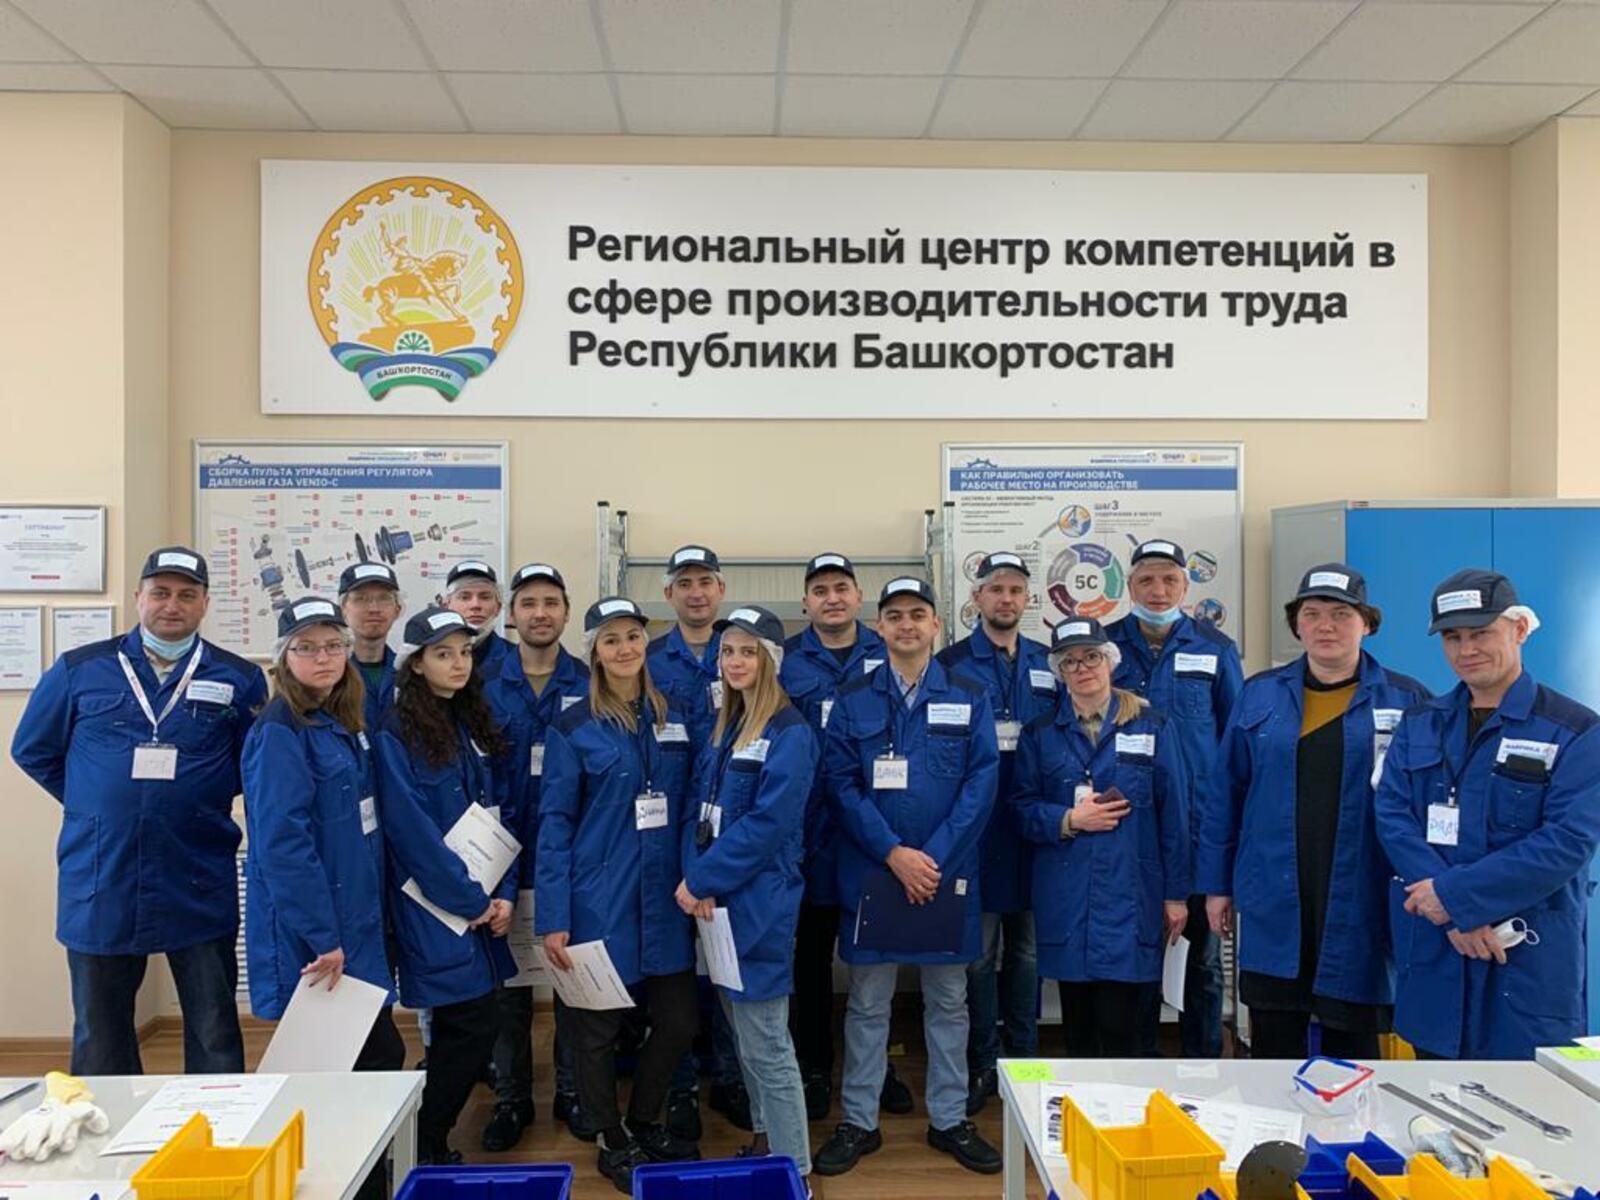 Башкортостанский Региональный центр компетенций в сфере производительности труда стал лидером в стране